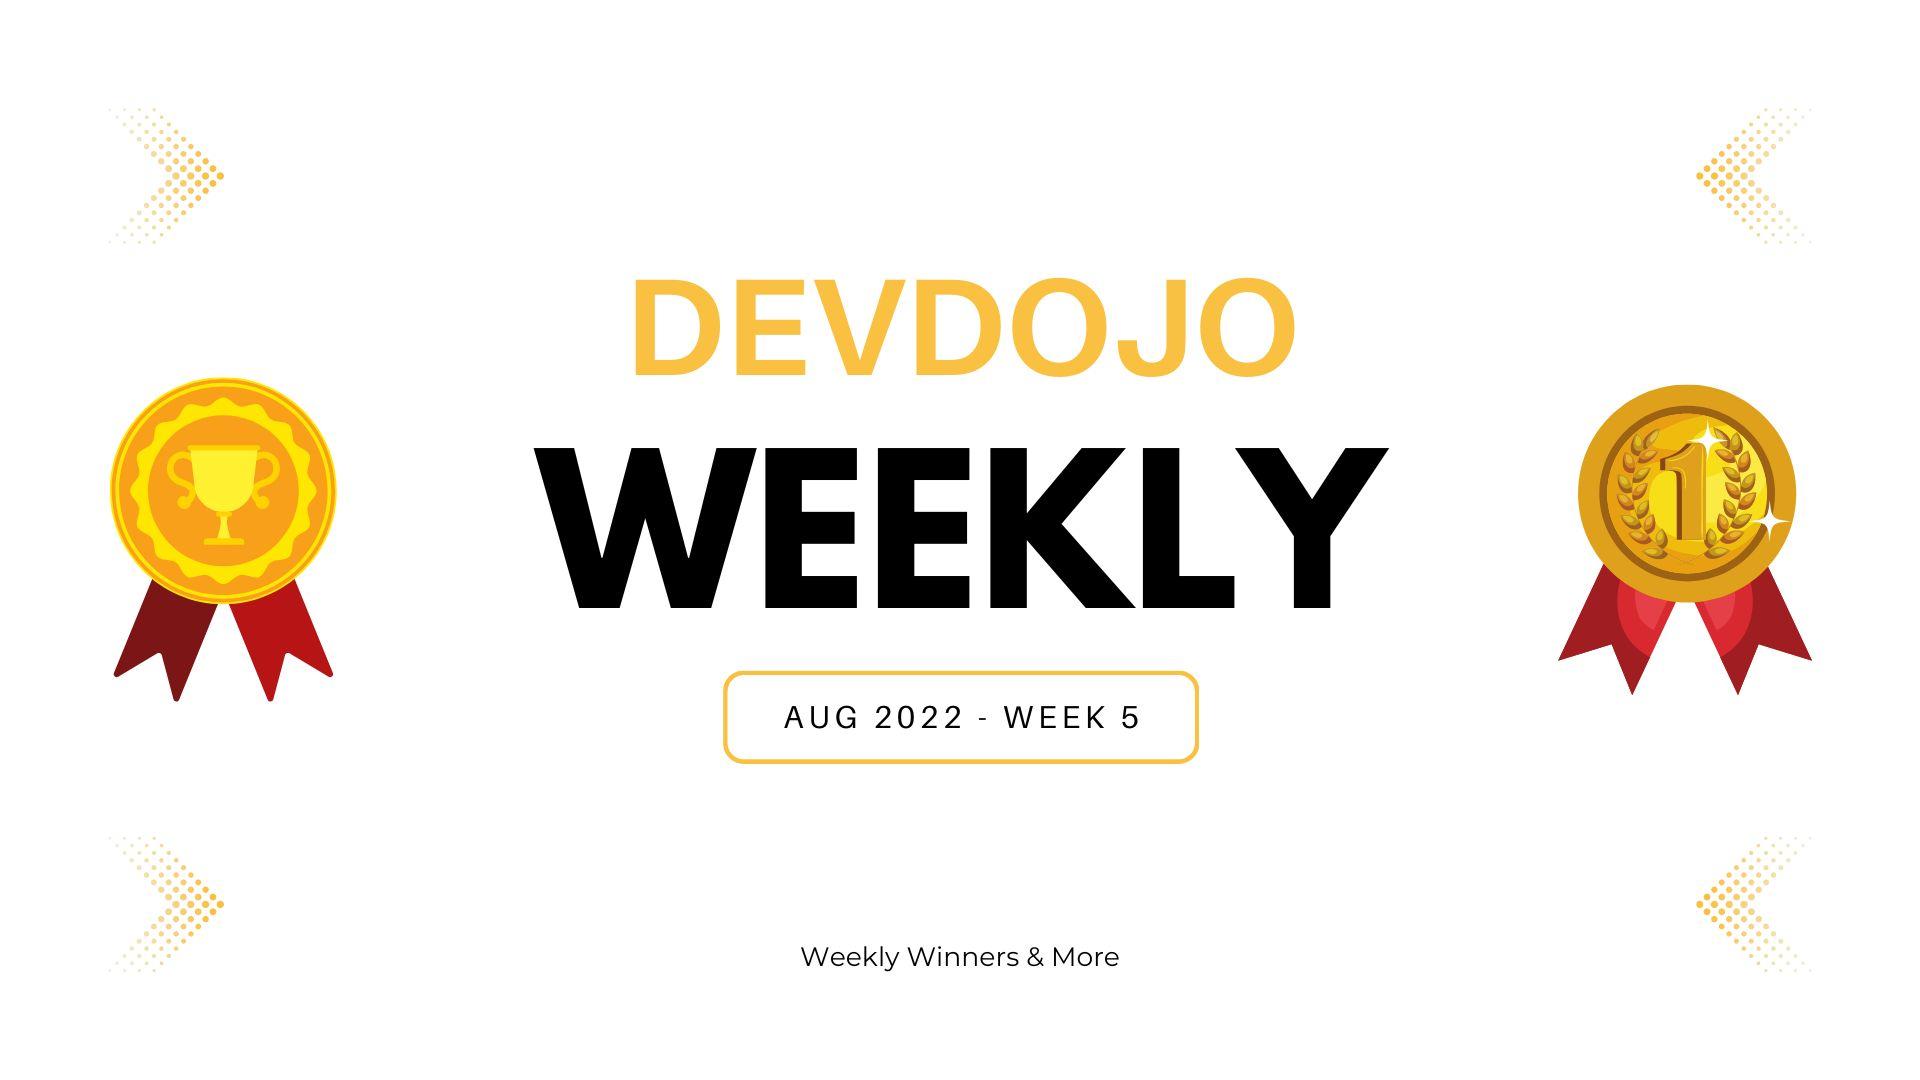 DevDojo Weekly - August 2022 - Week 5